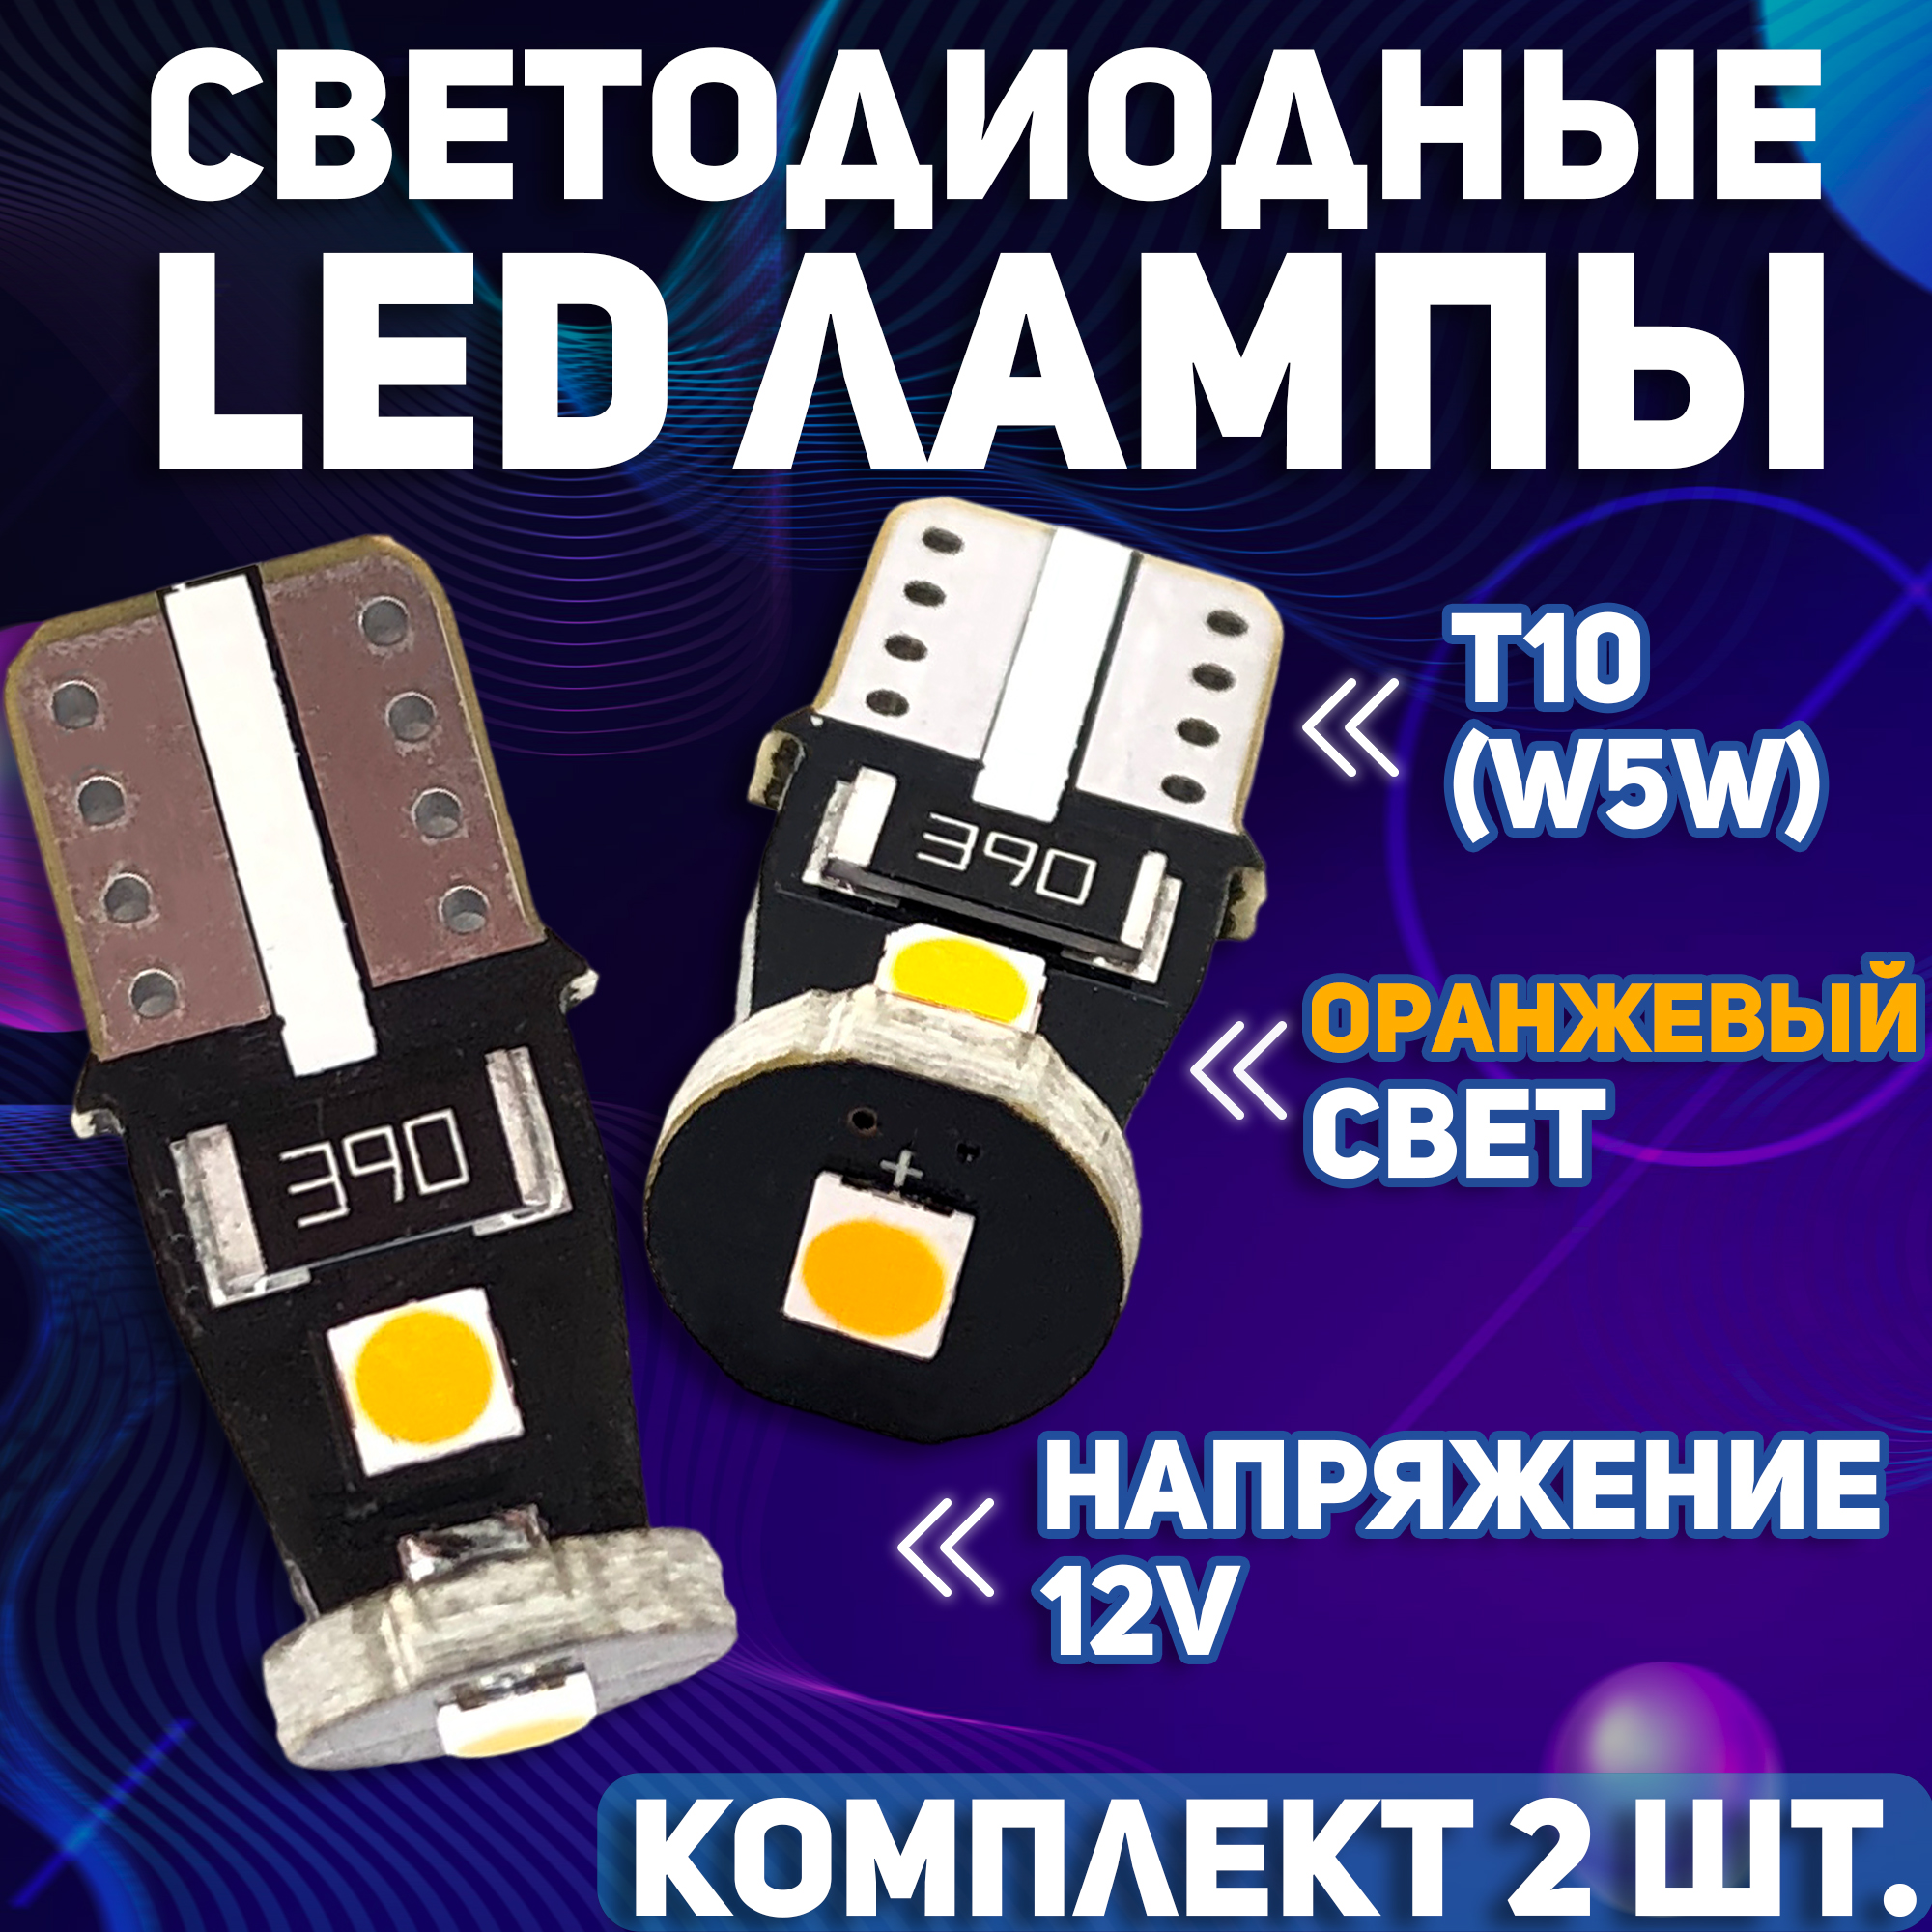 Комплект (2 шт.) Светодиодные автомобильные LED лампы TaKiMi 3SMD T10 (W5W), Оранжевый, Не